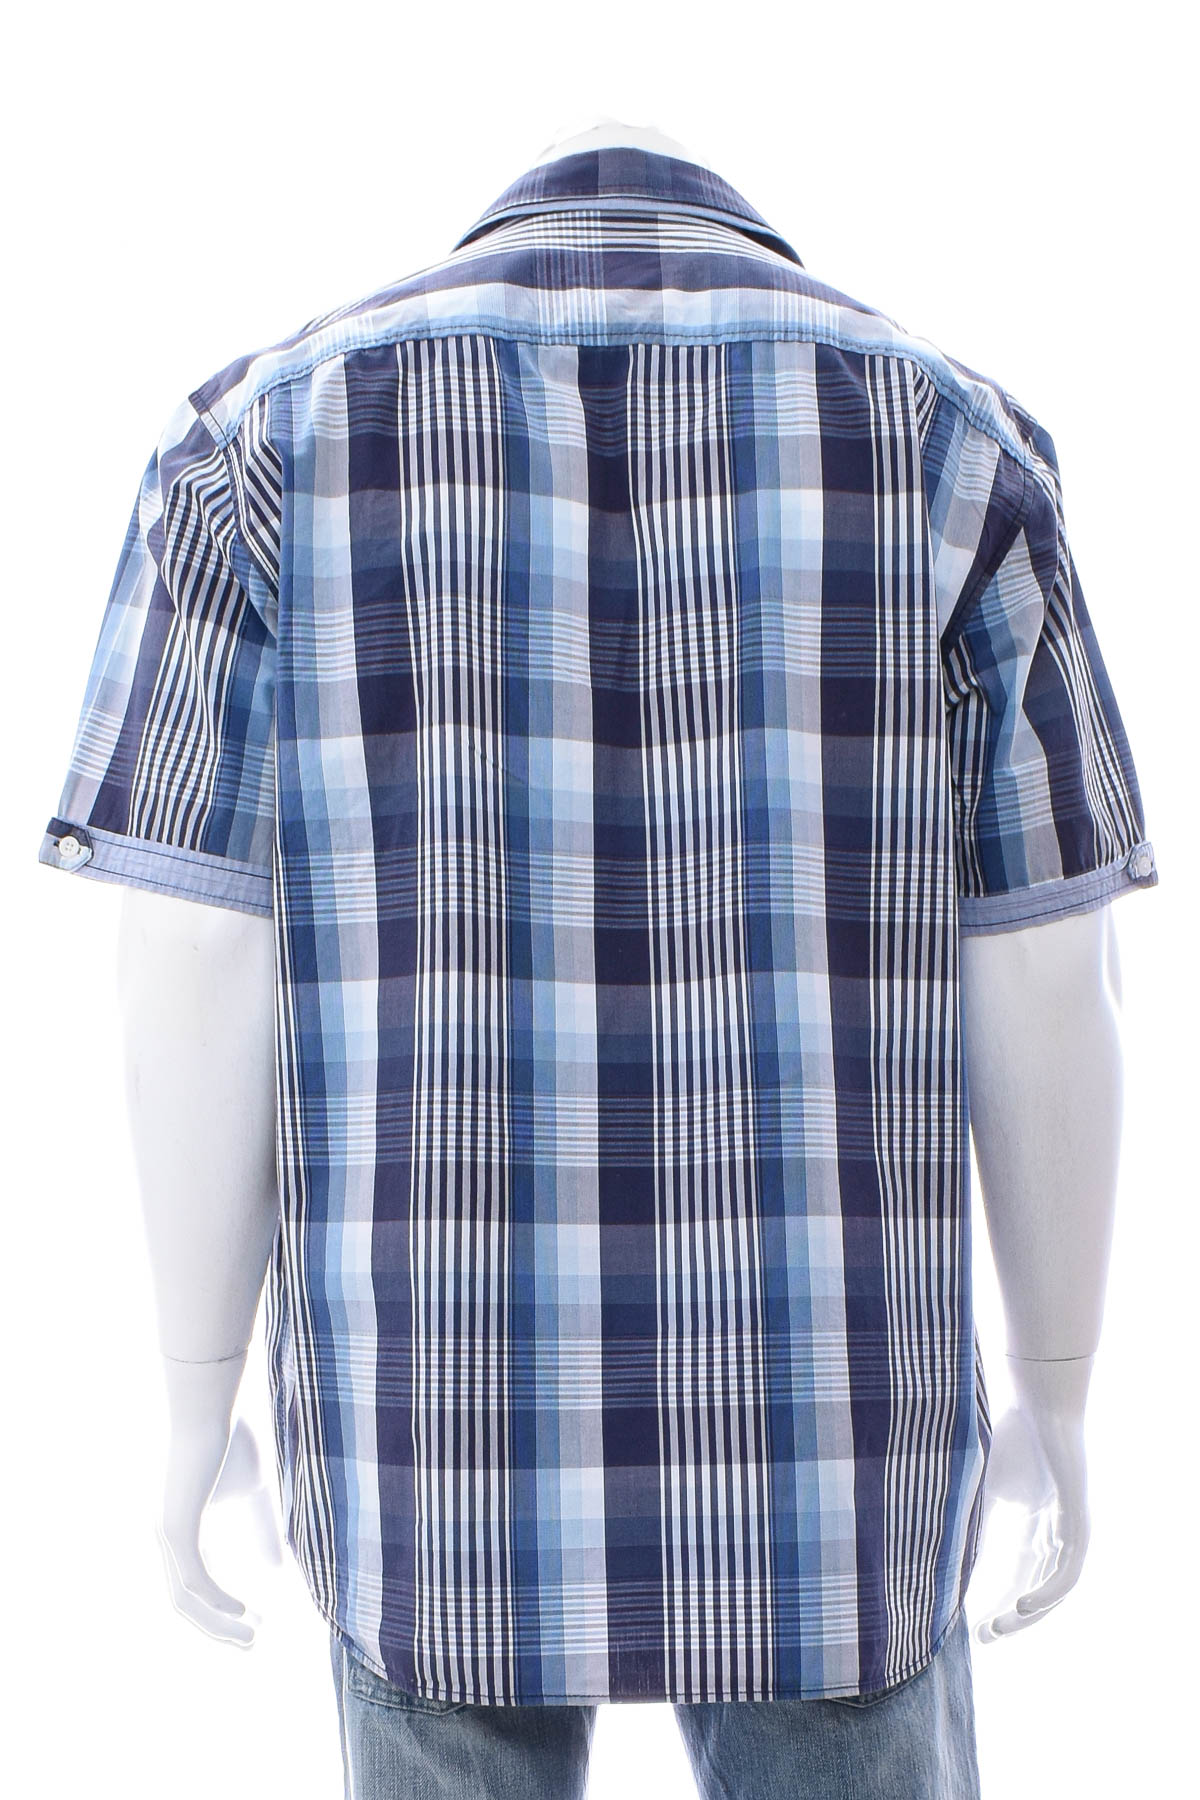 Ανδρικό πουκάμισο - Lerros - 1